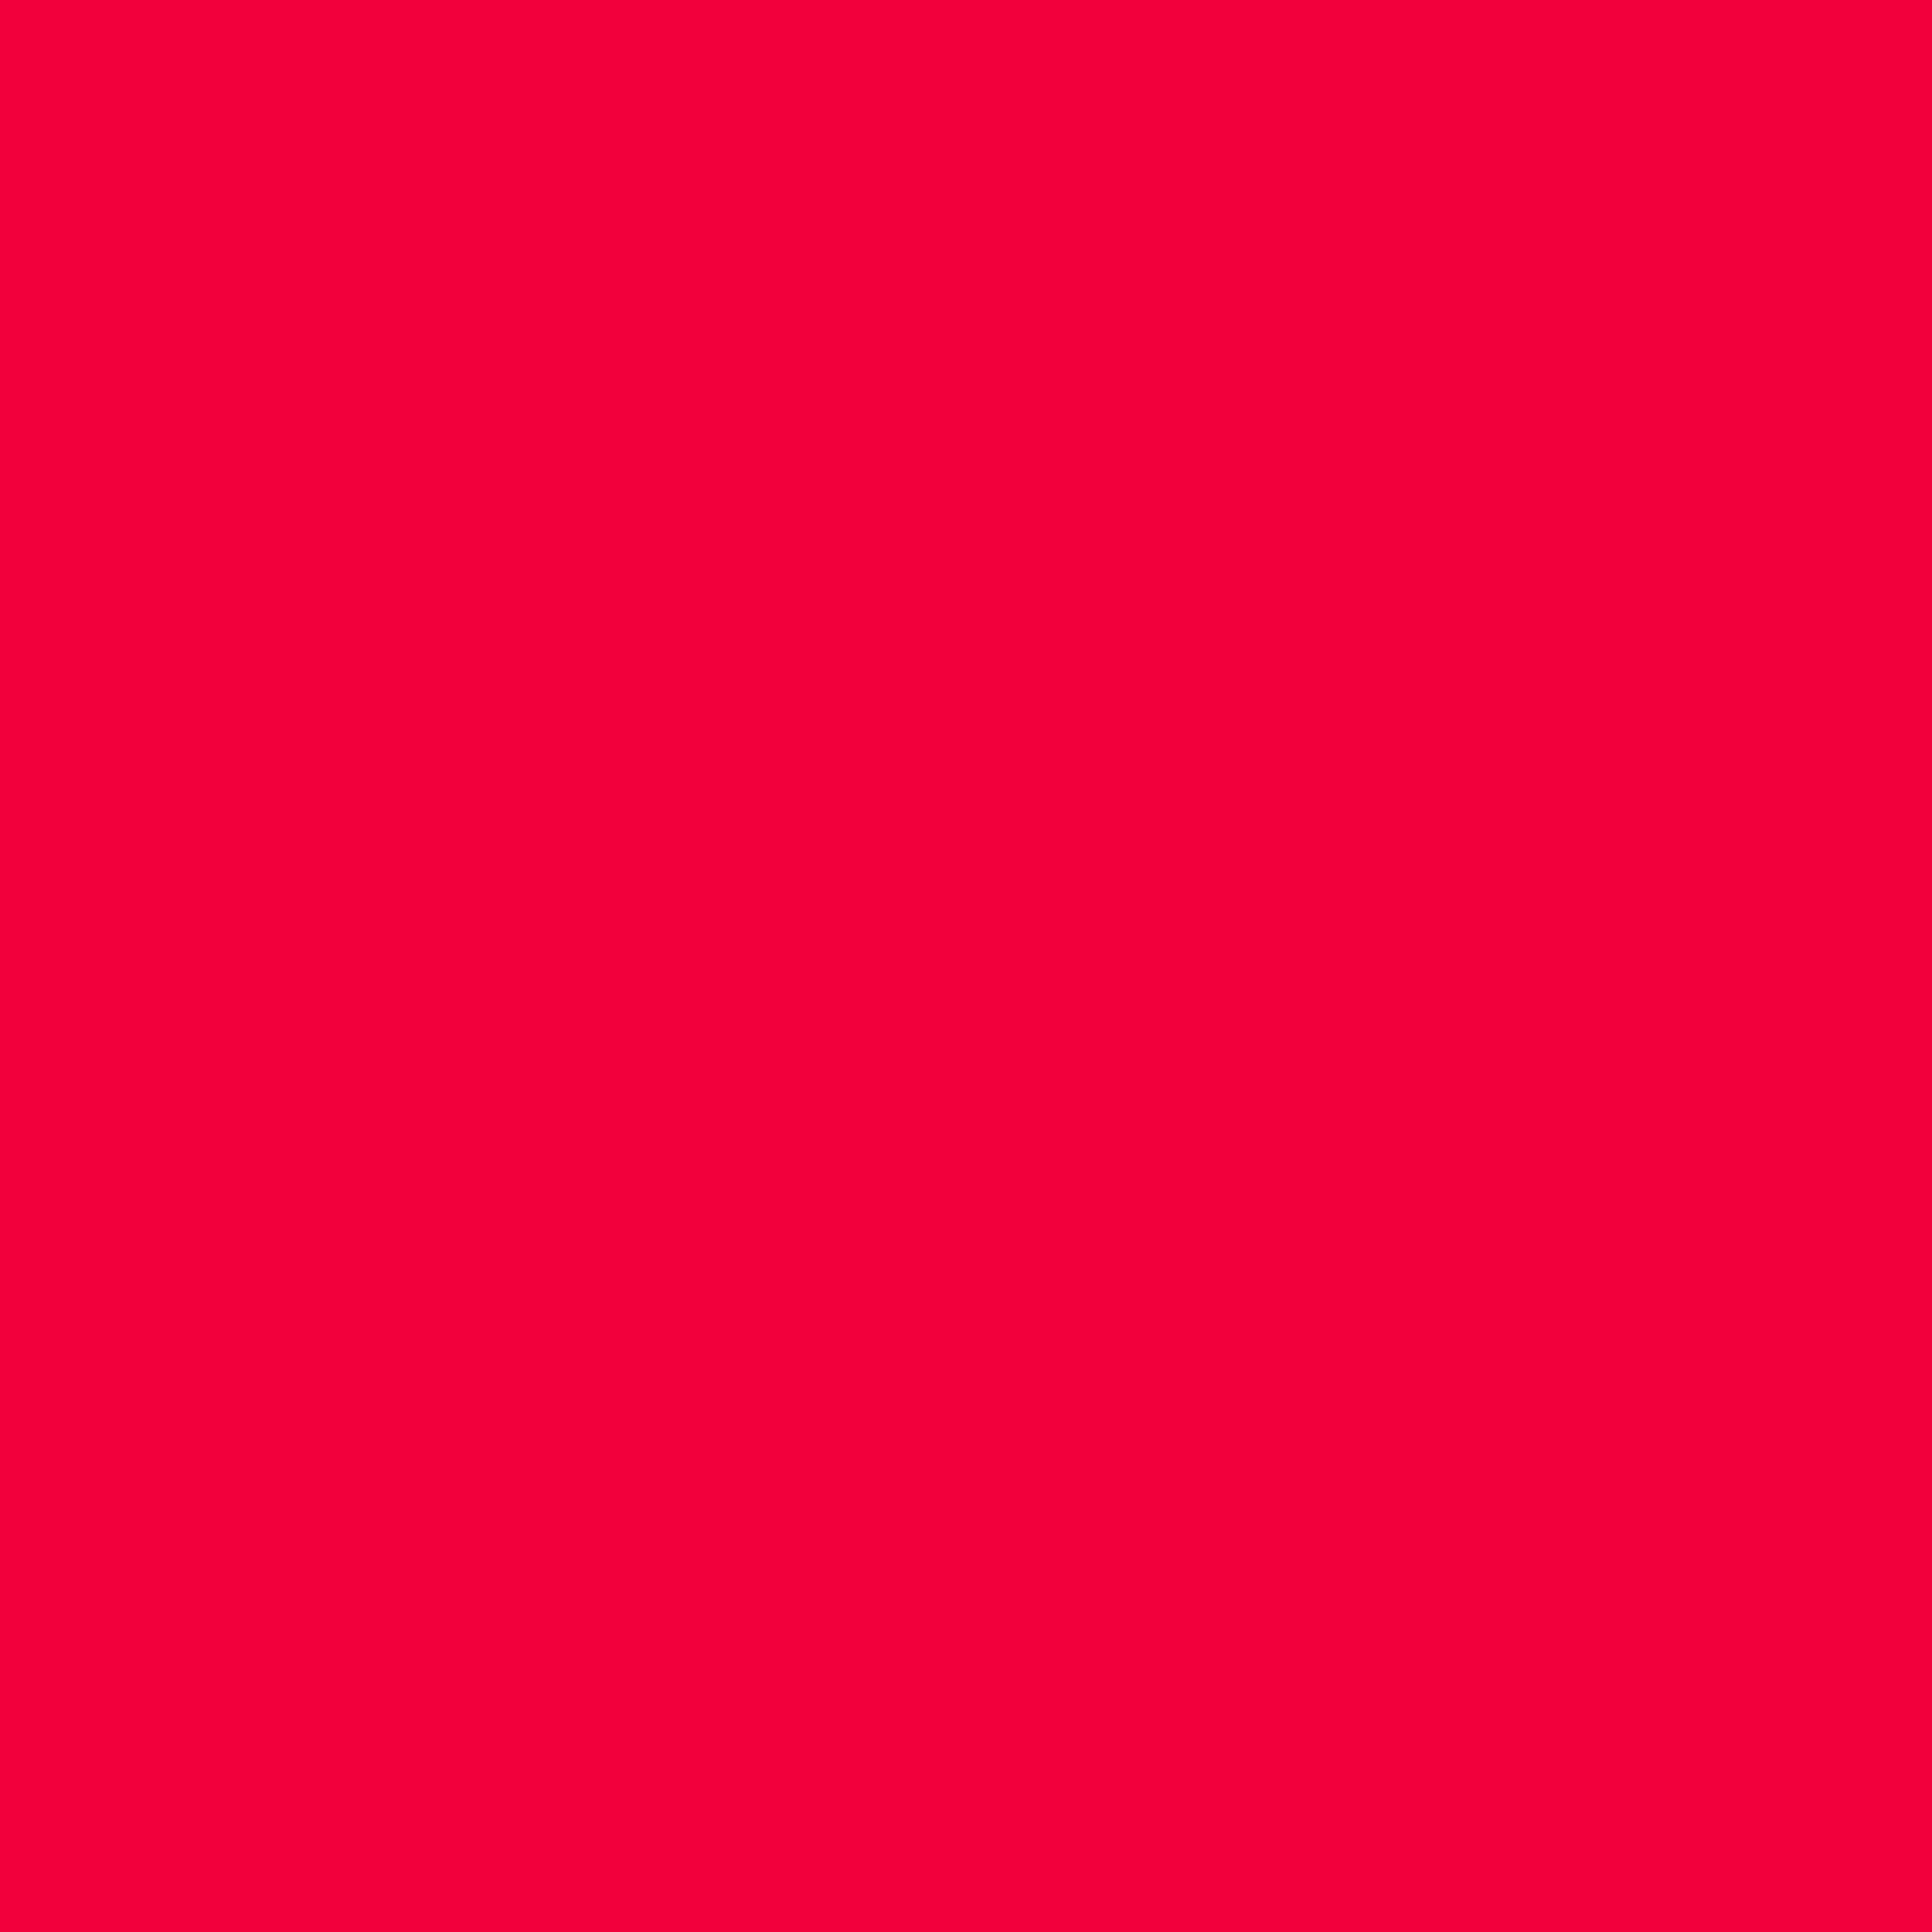 Màu đỏ Munsell là một màu sắc đẹp và trang nhã, luôn tạo nên sự chú ý và thu hút ánh nhìn của người xem. Hãy cùng ngắm nhìn hình ảnh mang màu đỏ Munsell để khám phá sức hút đặc biệt của nó.